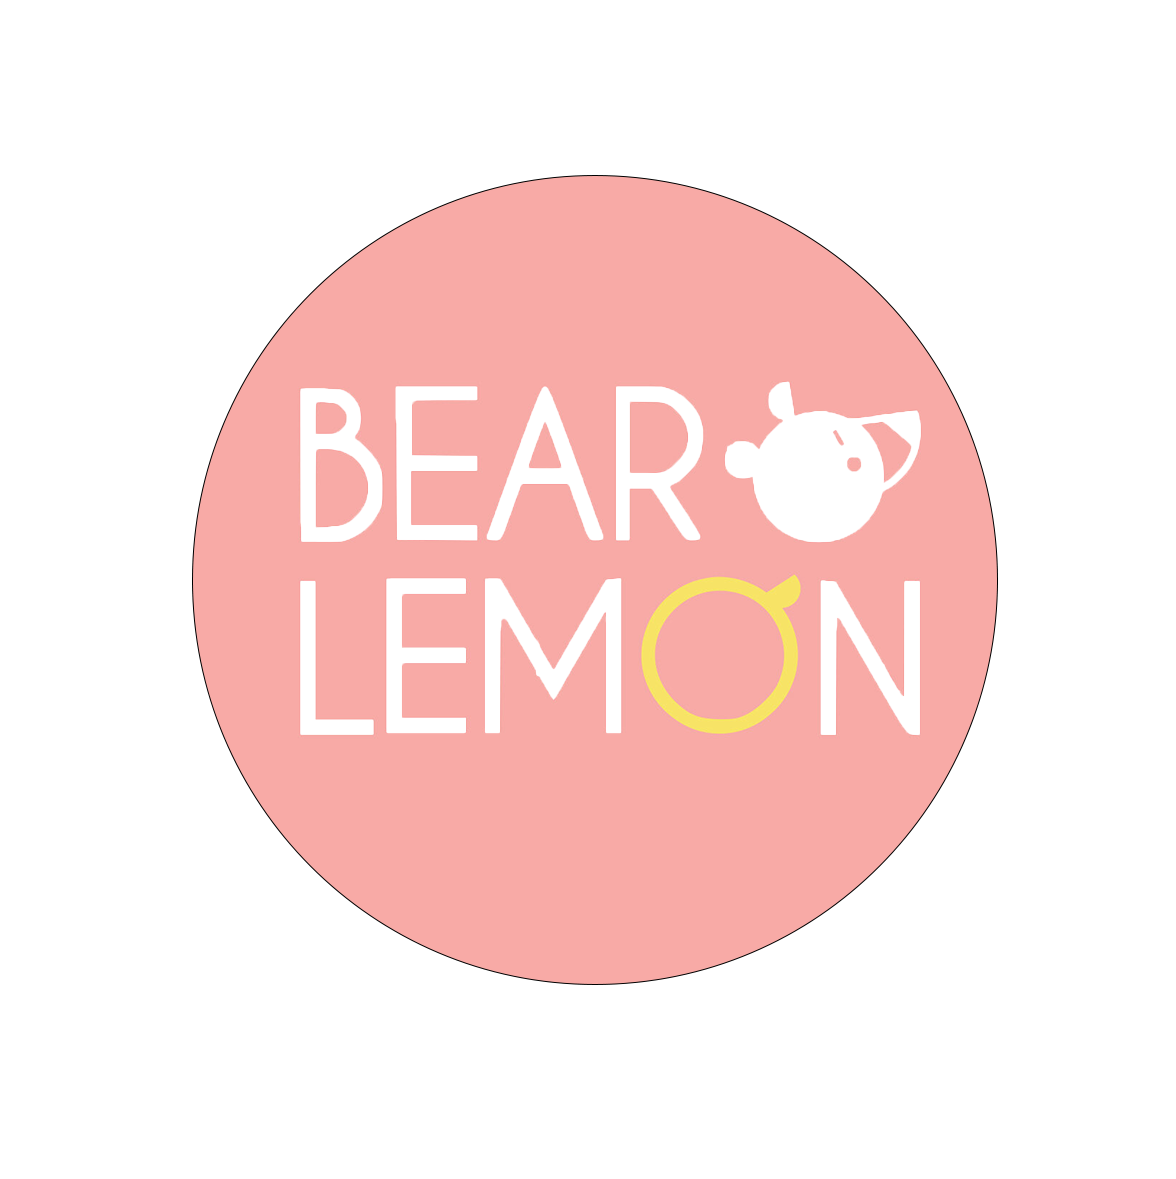 Bear Lemon Cafe, photo content